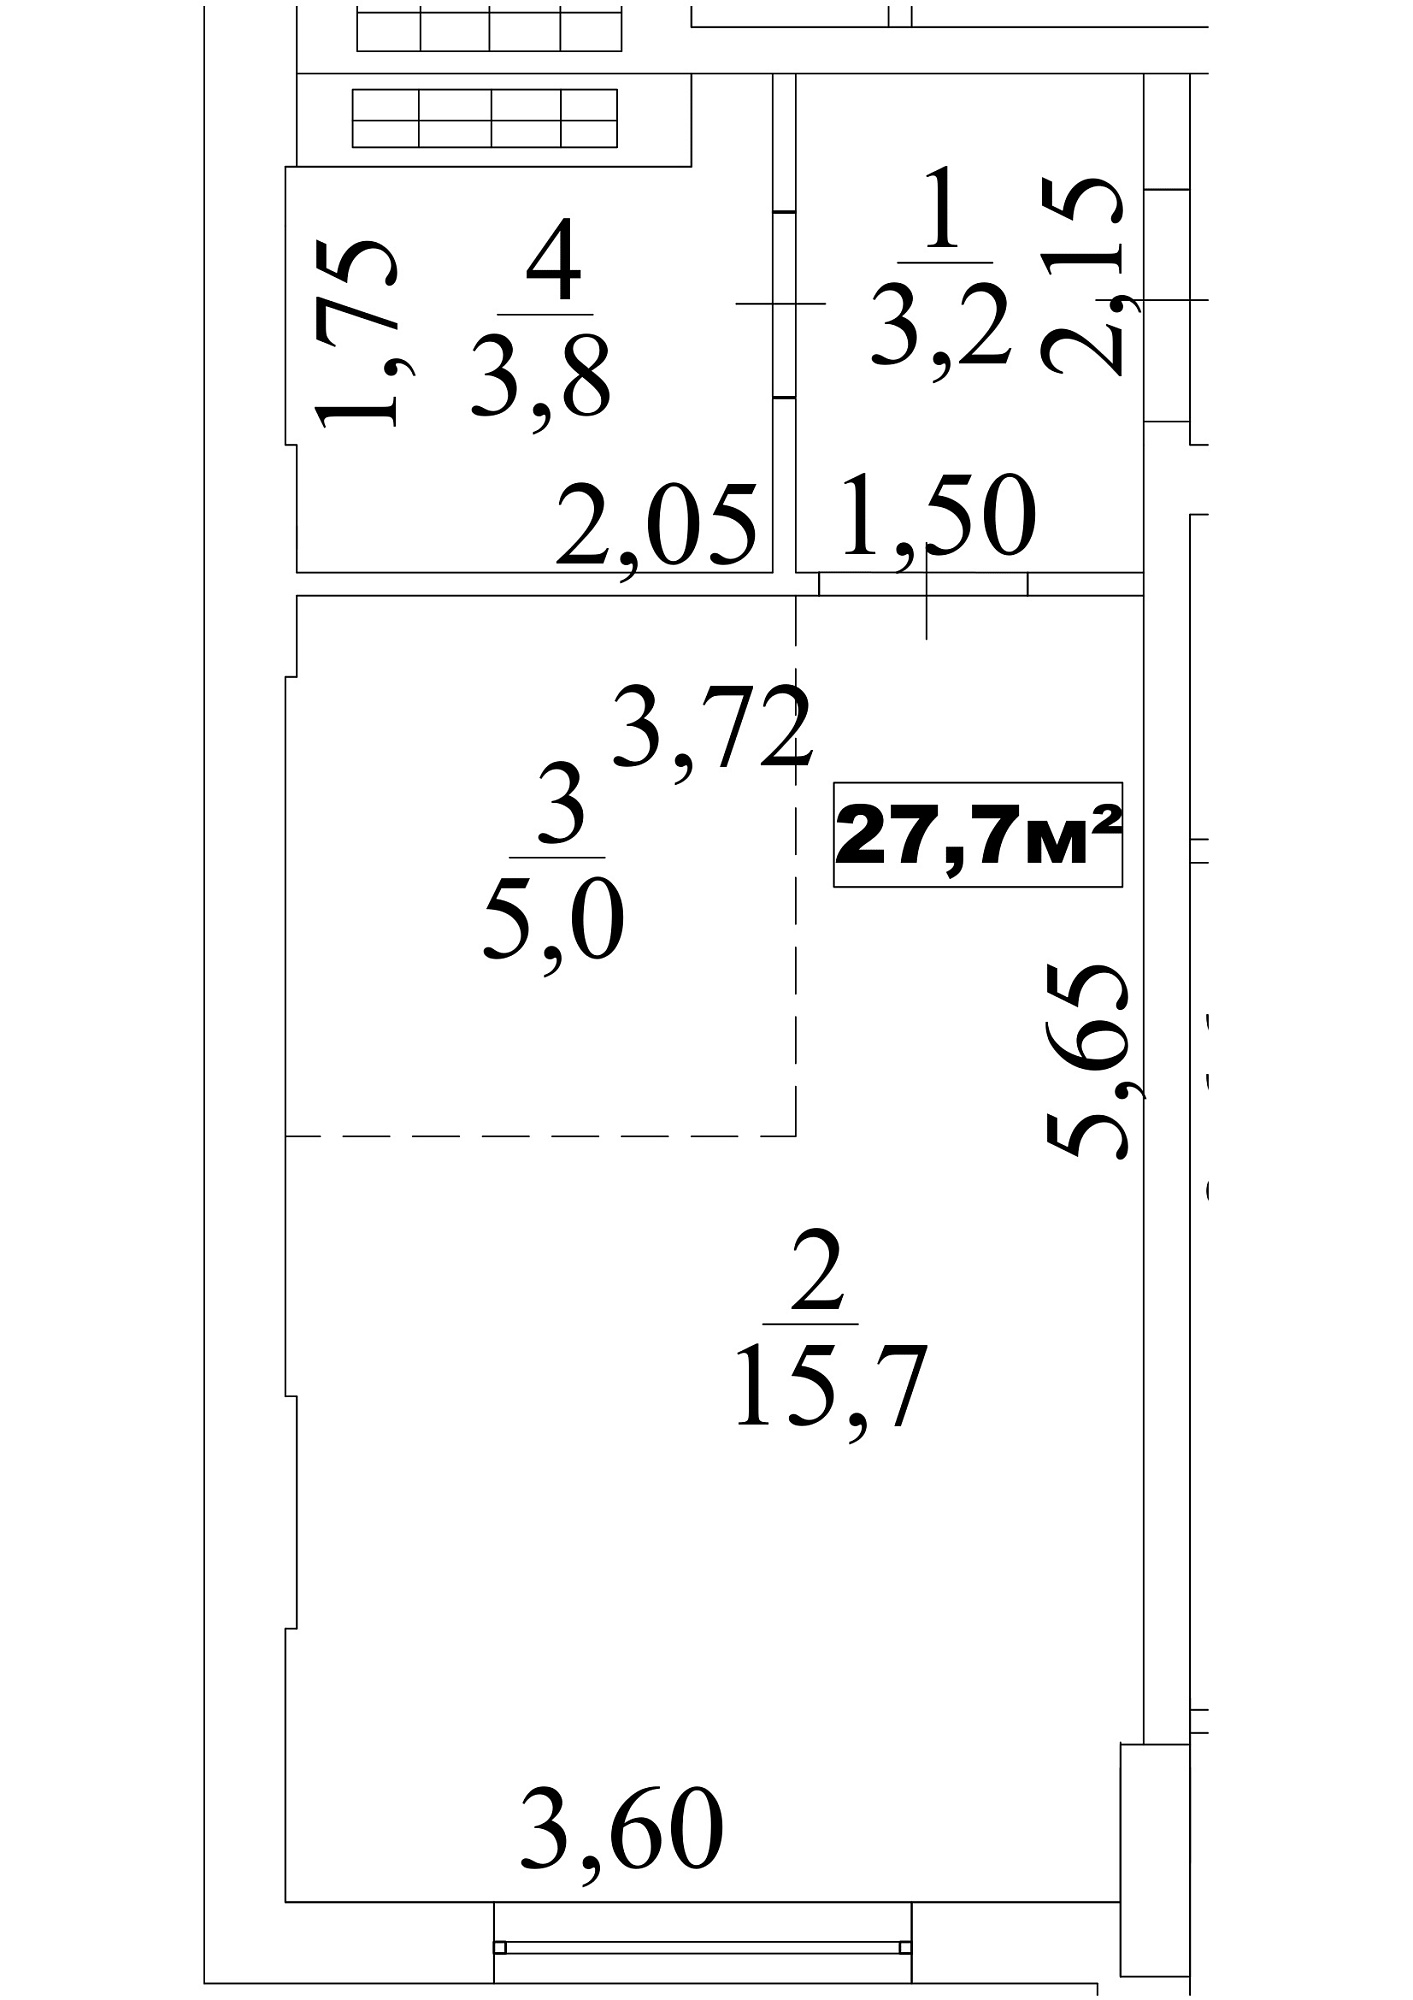 Планування Smart-квартира площею 27.7м2, AB-10-01/0003а.